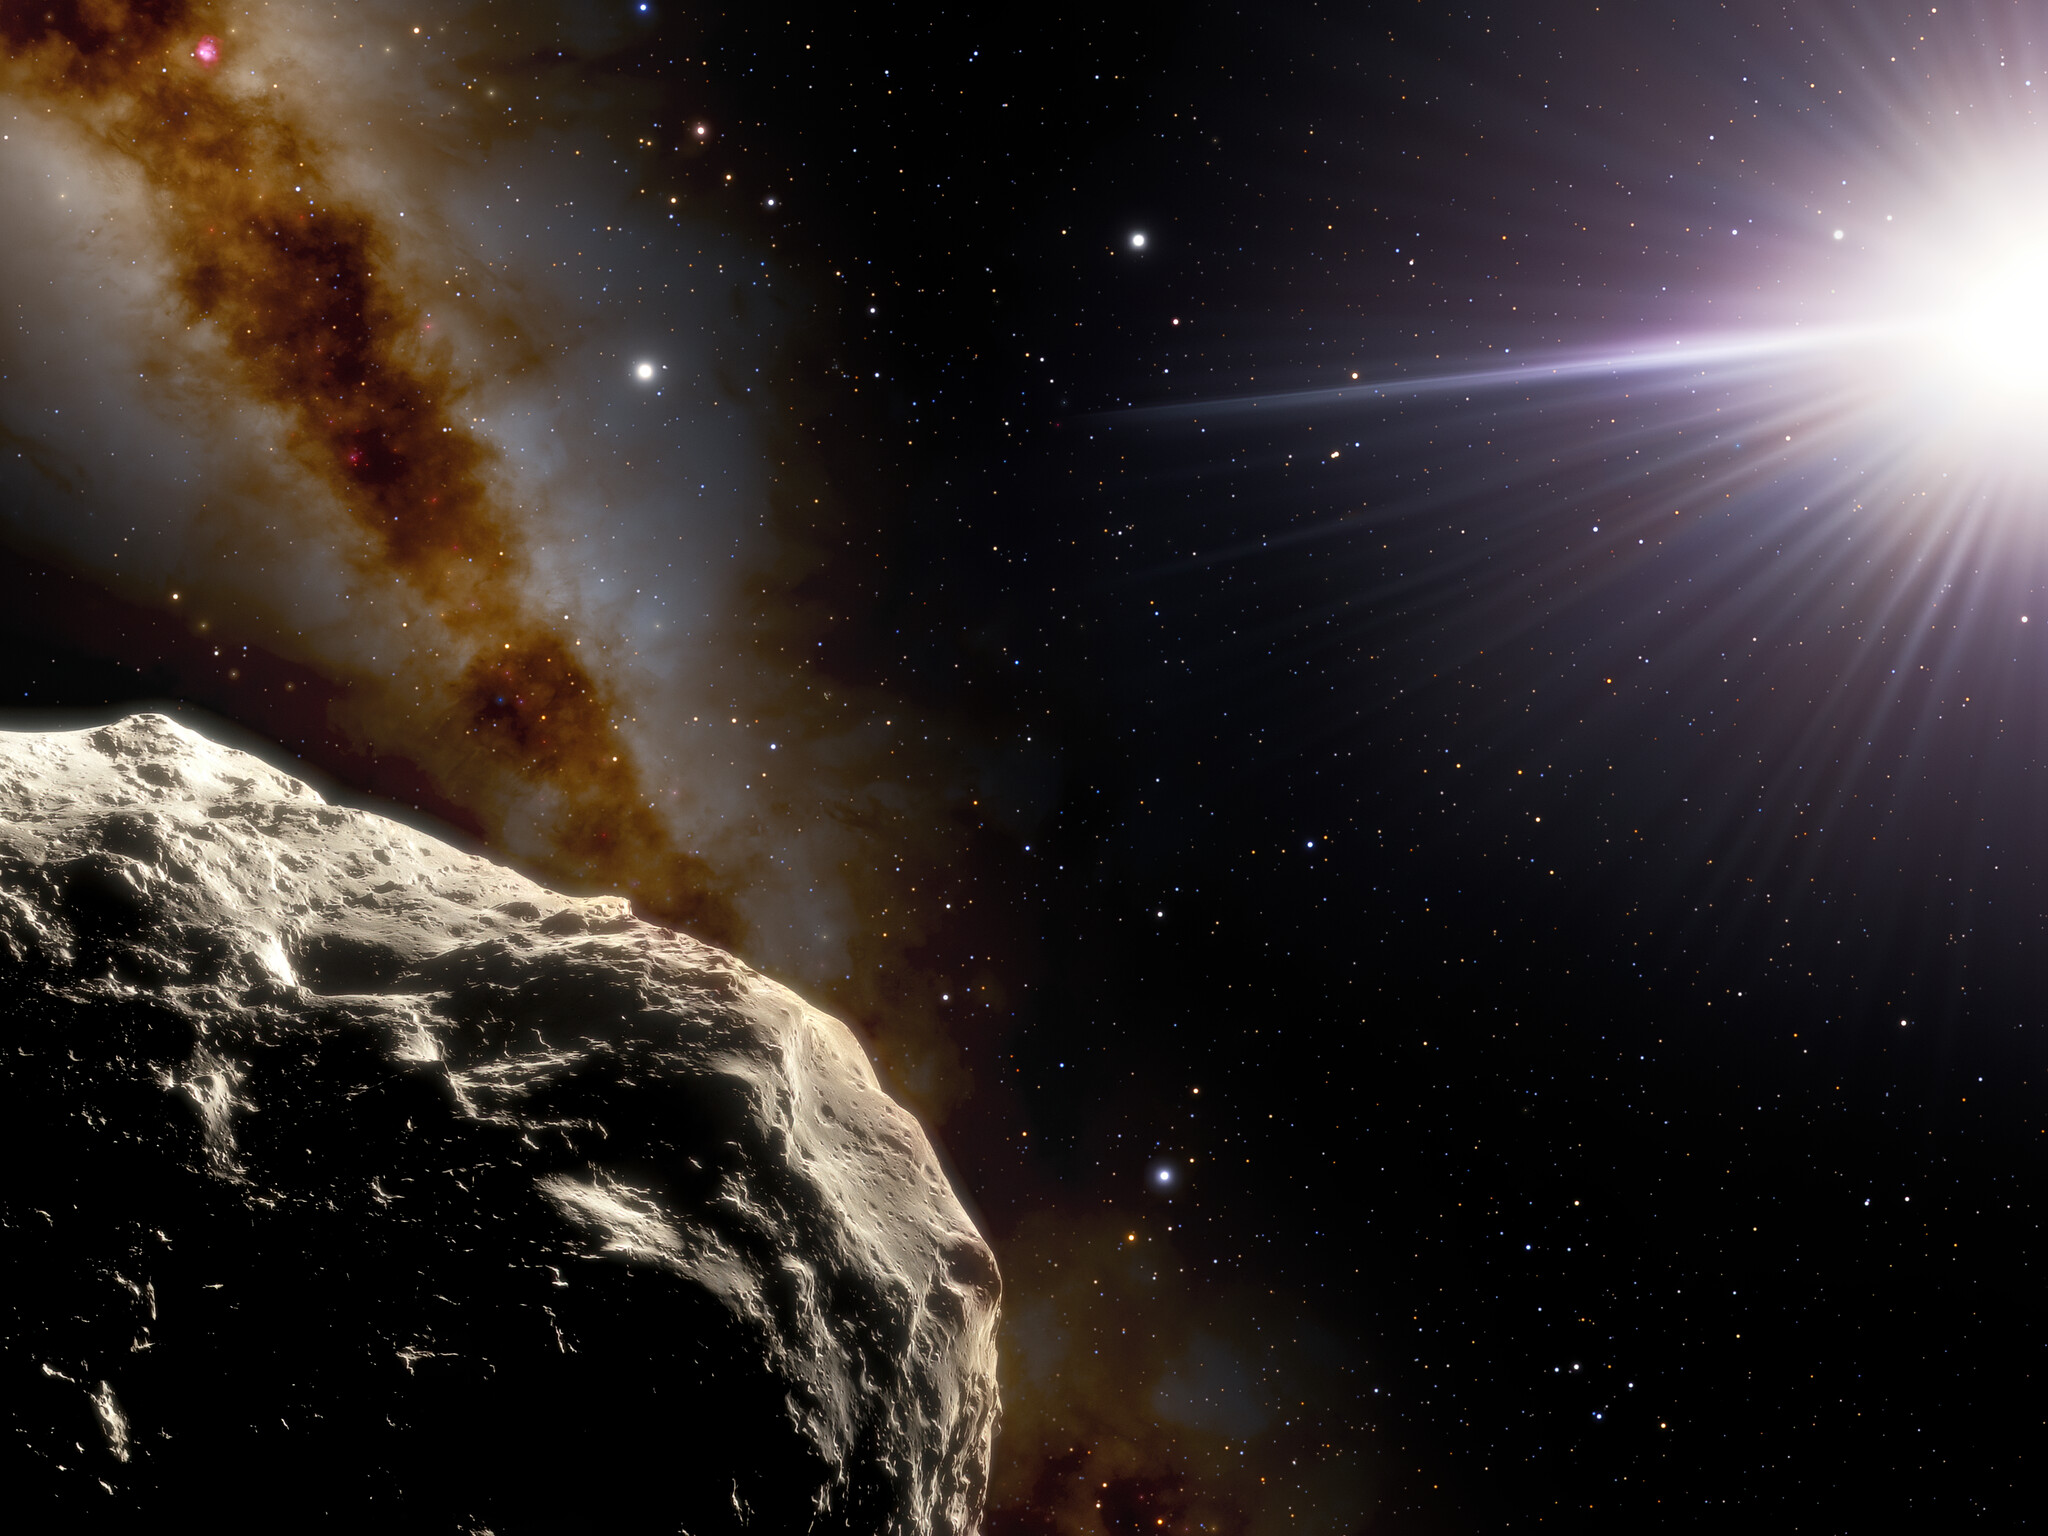 À l'aide du télescope SOAR (Southern Astrophysical Research) de 4,1 mètres sur le Cerro Pachón au Chili, les astronomes ont confirmé qu'un astéroïde découvert en 2020 par l'enquête Pan-STARRS1, appelé 2020 XL5, est bien un troyen. Dans cette illustration, l'astéroïde est représenté au premier plan en bas à gauche. Les deux points brillants au-dessus à l'extrême gauche sont la Terre (à droite) et la Lune (à gauche). Le Soleil apparaît à droite. © NOIRLab, NSF, AURA, J. Da Silva